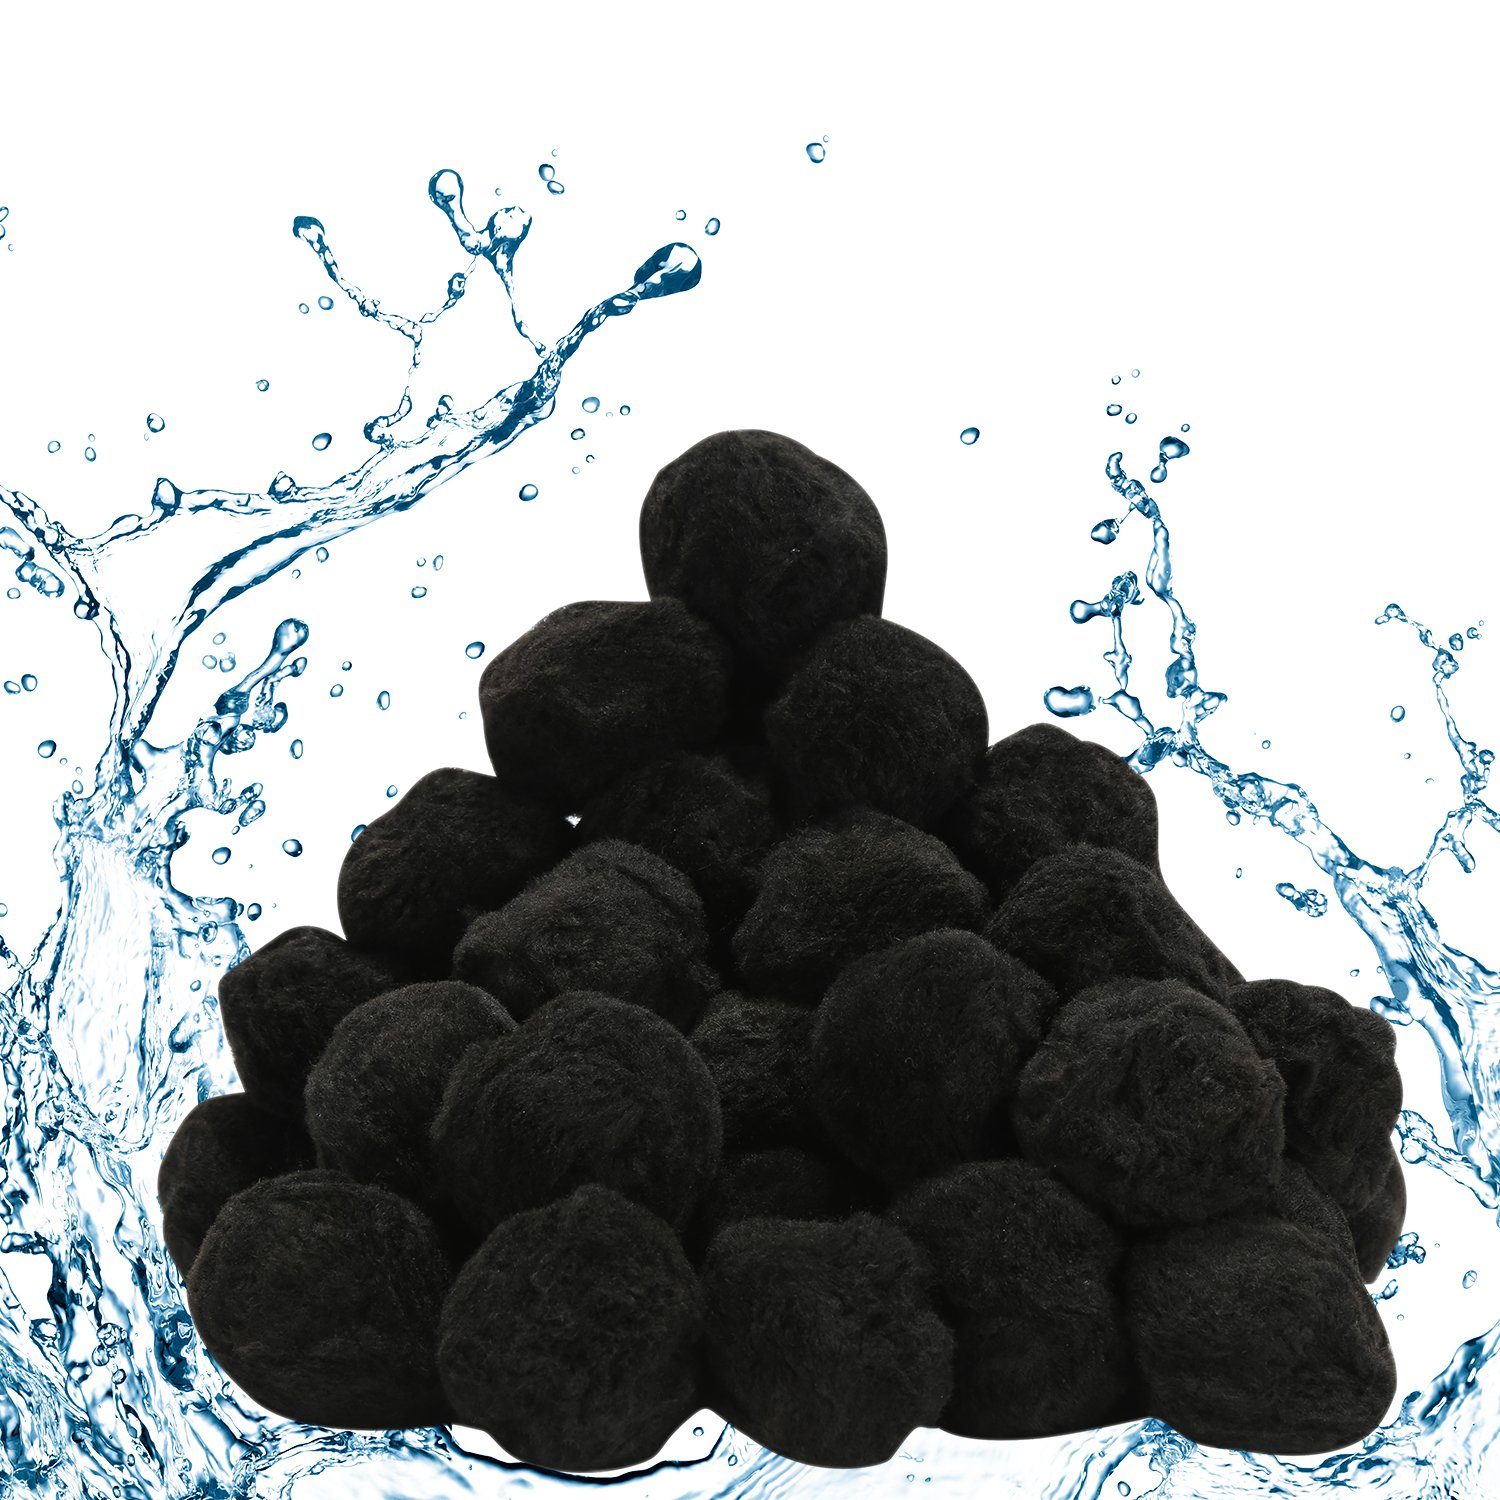 Randaco Sandfilteranlage Filter Balls für Filterpumpe Filtersand für 25kg Filterballs 700g